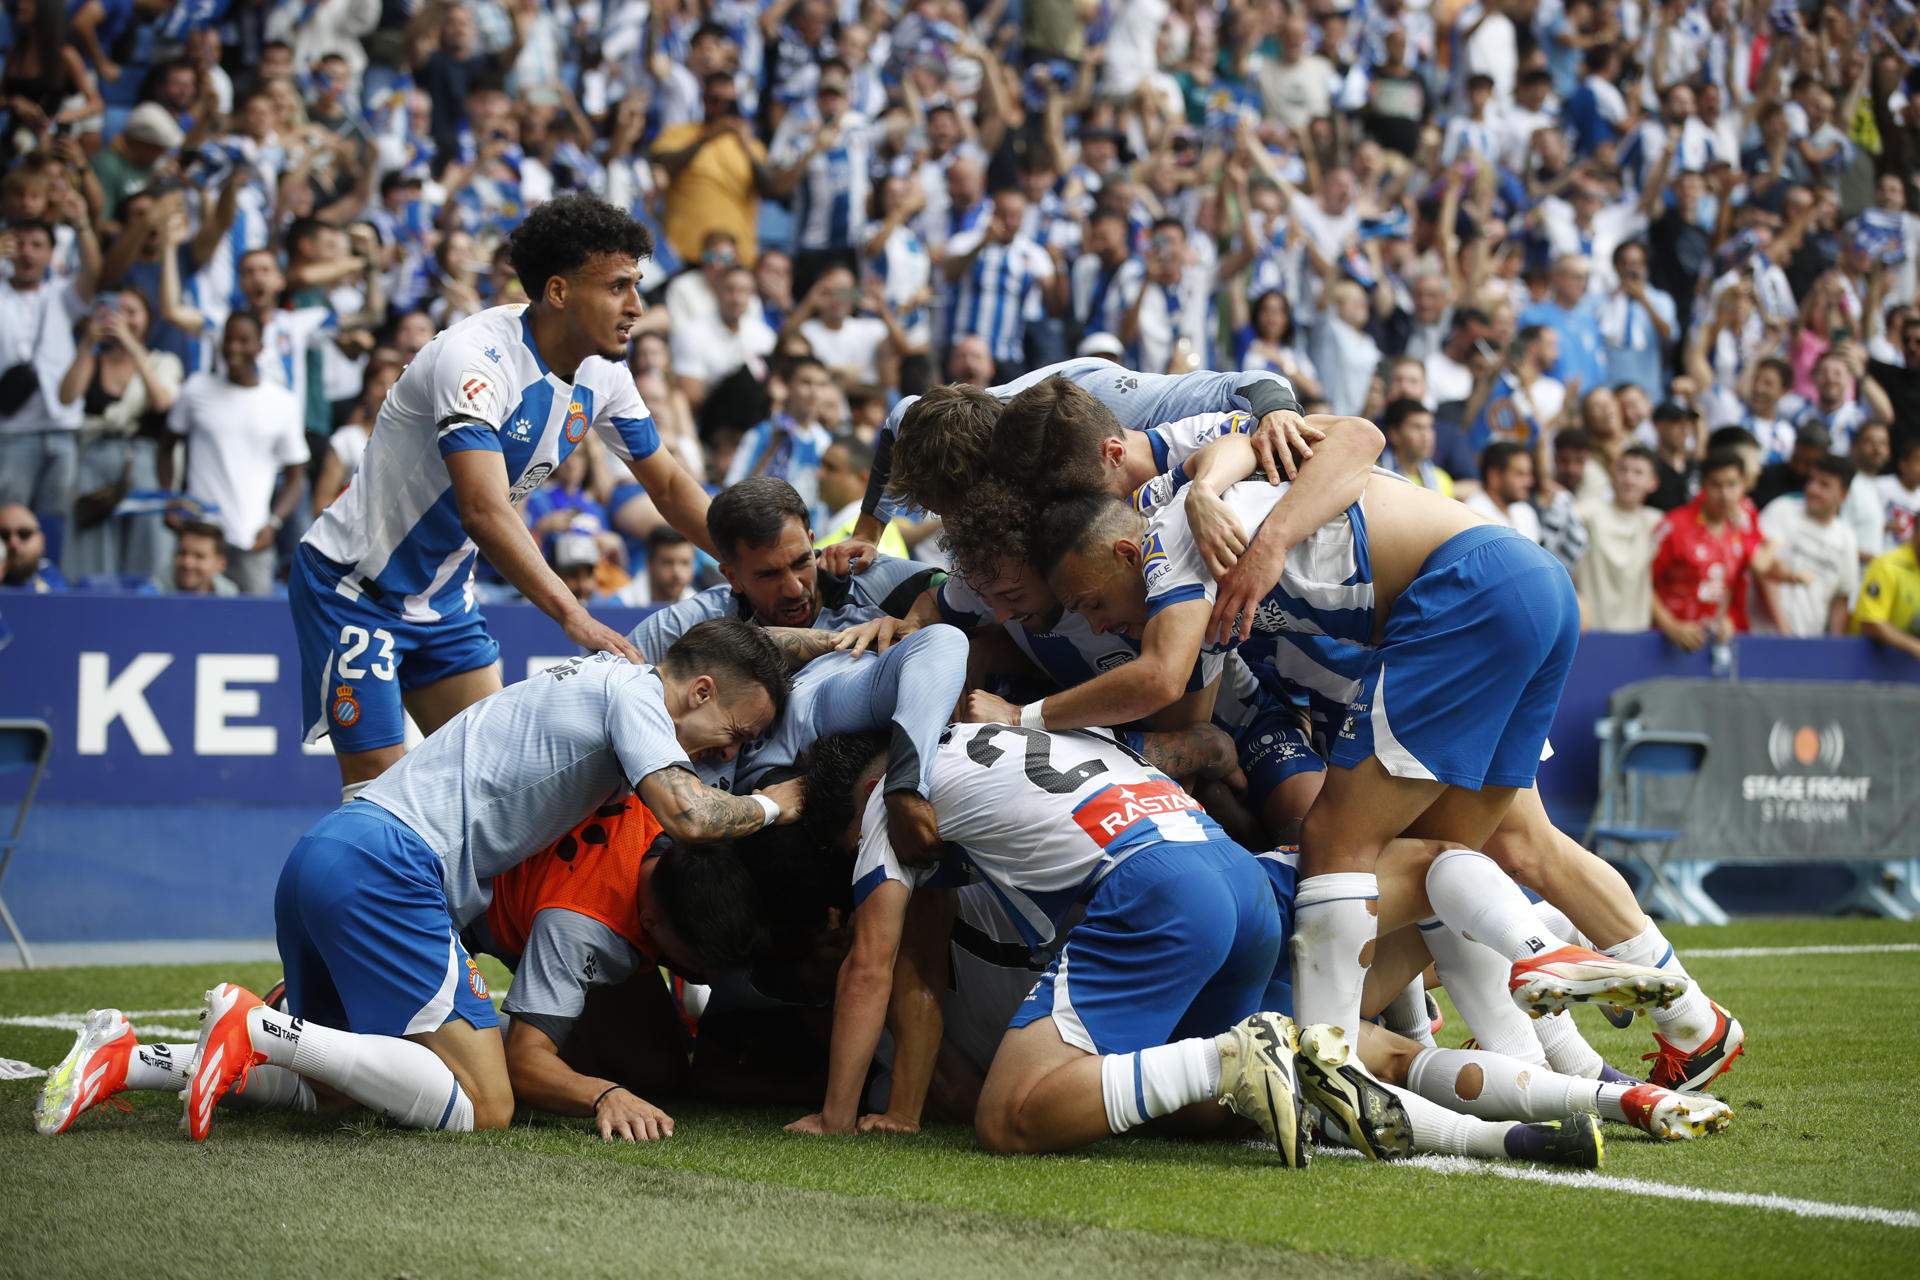 L'Espanyol completa la gesta davant de l'Oviedo (2-0) i torna a Primera Divisió